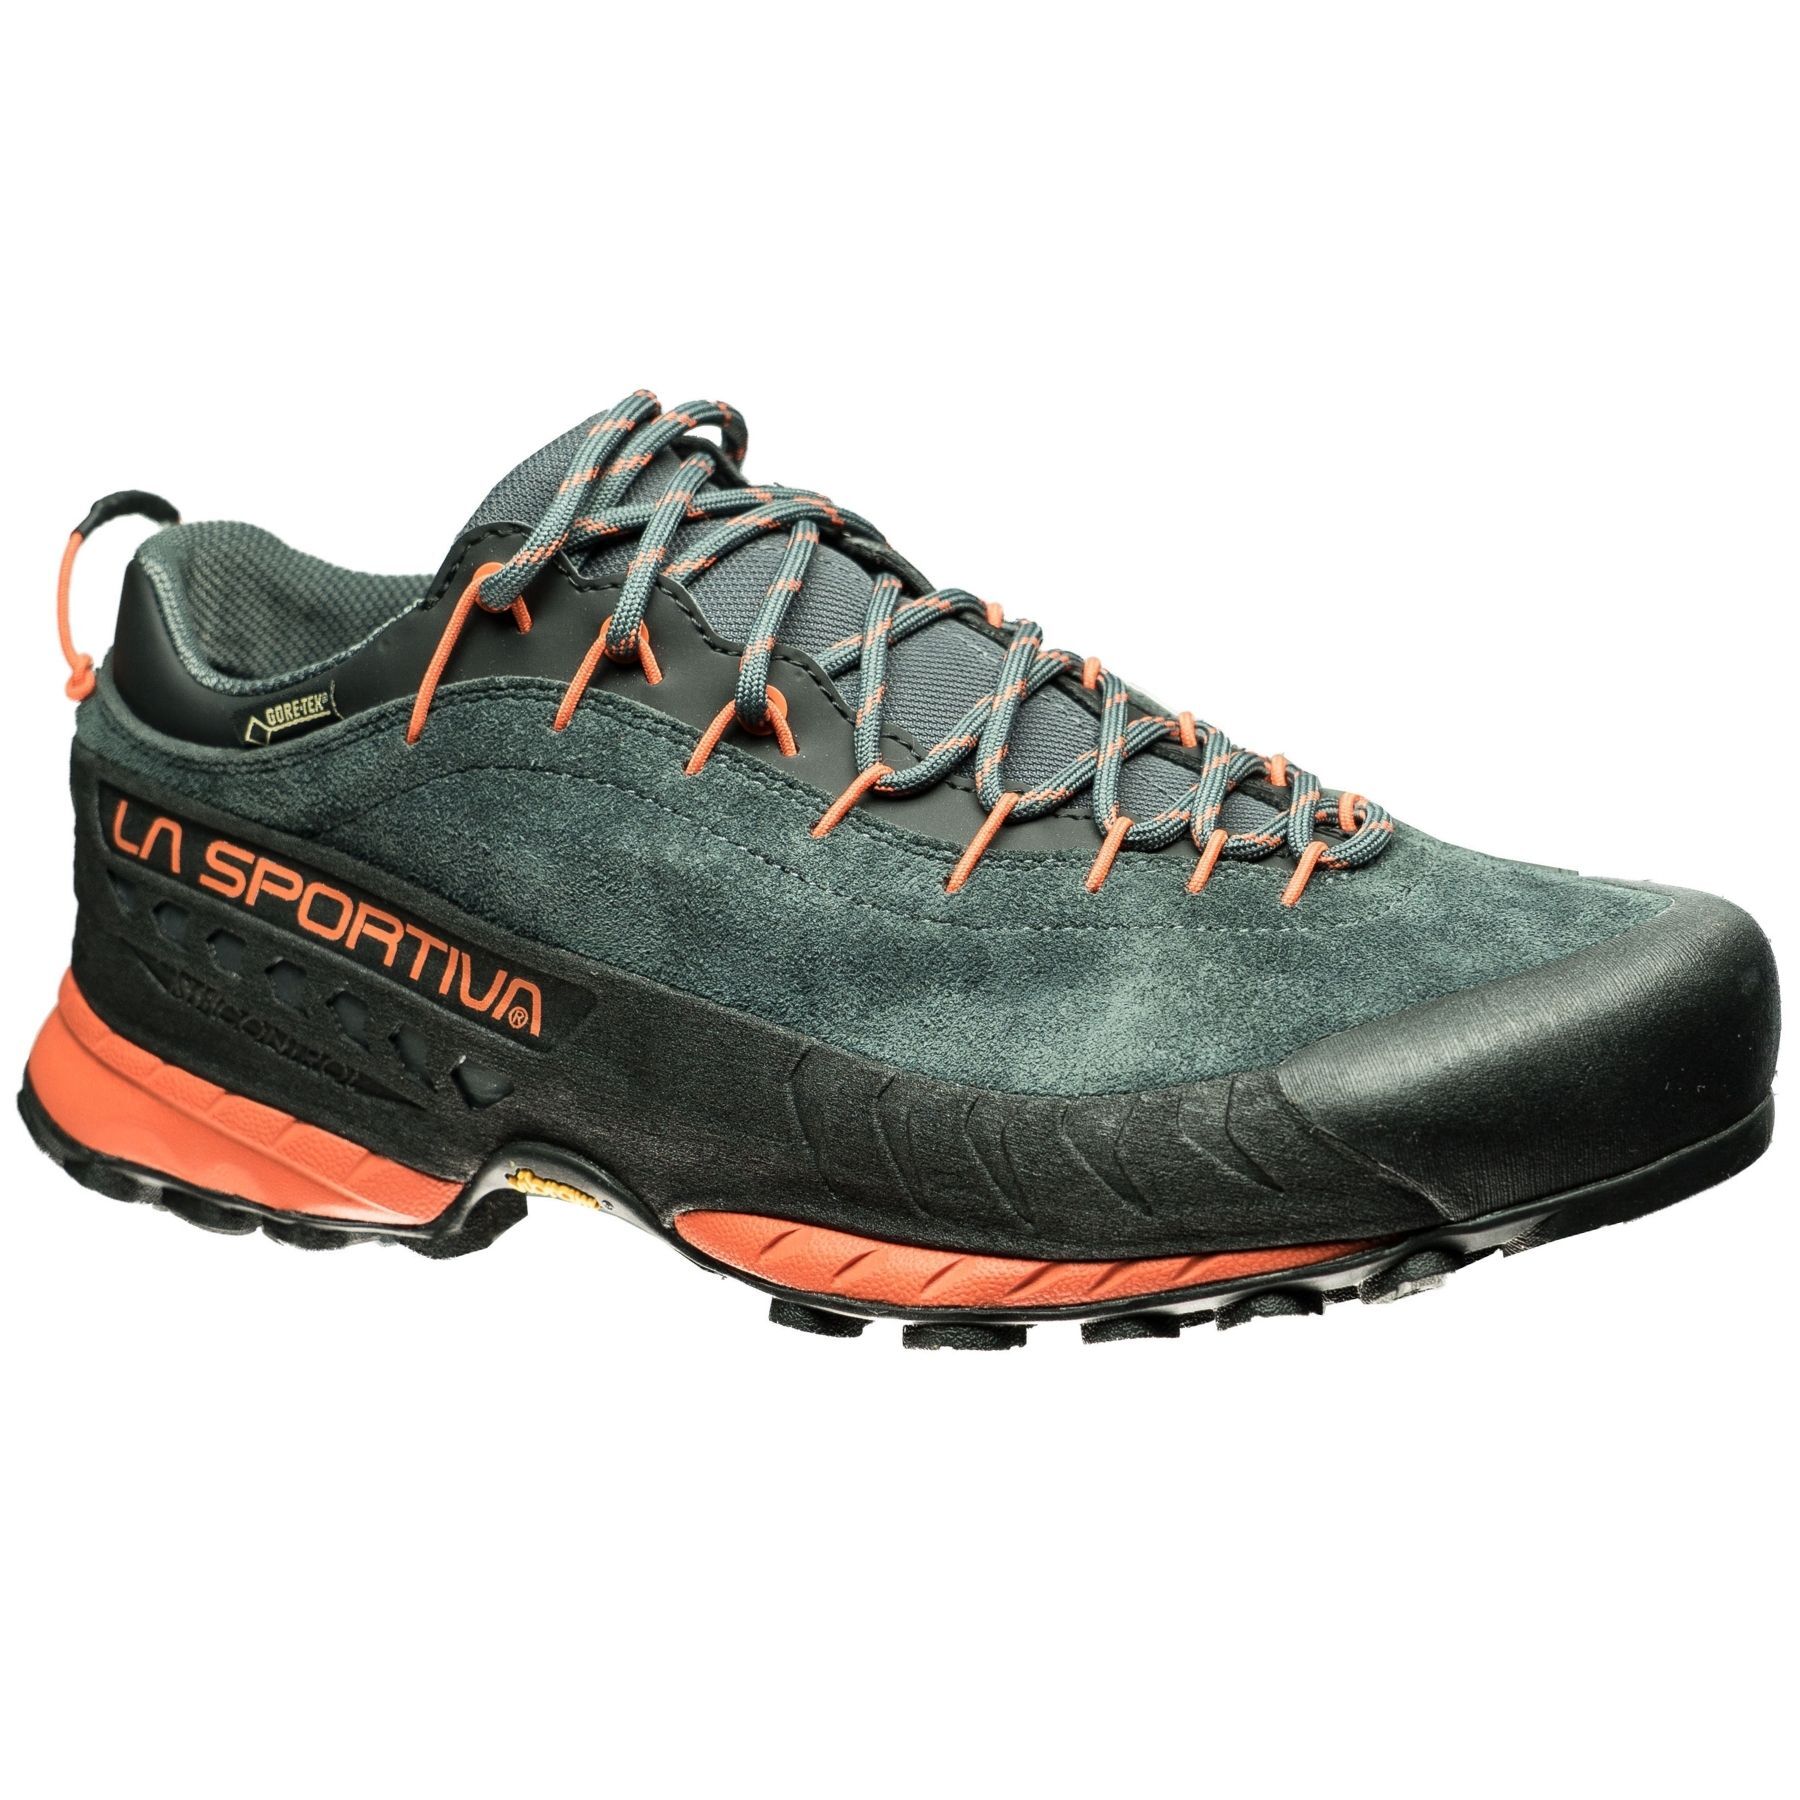 La Sportiva TX4 GTX - Approach shoes - Men's